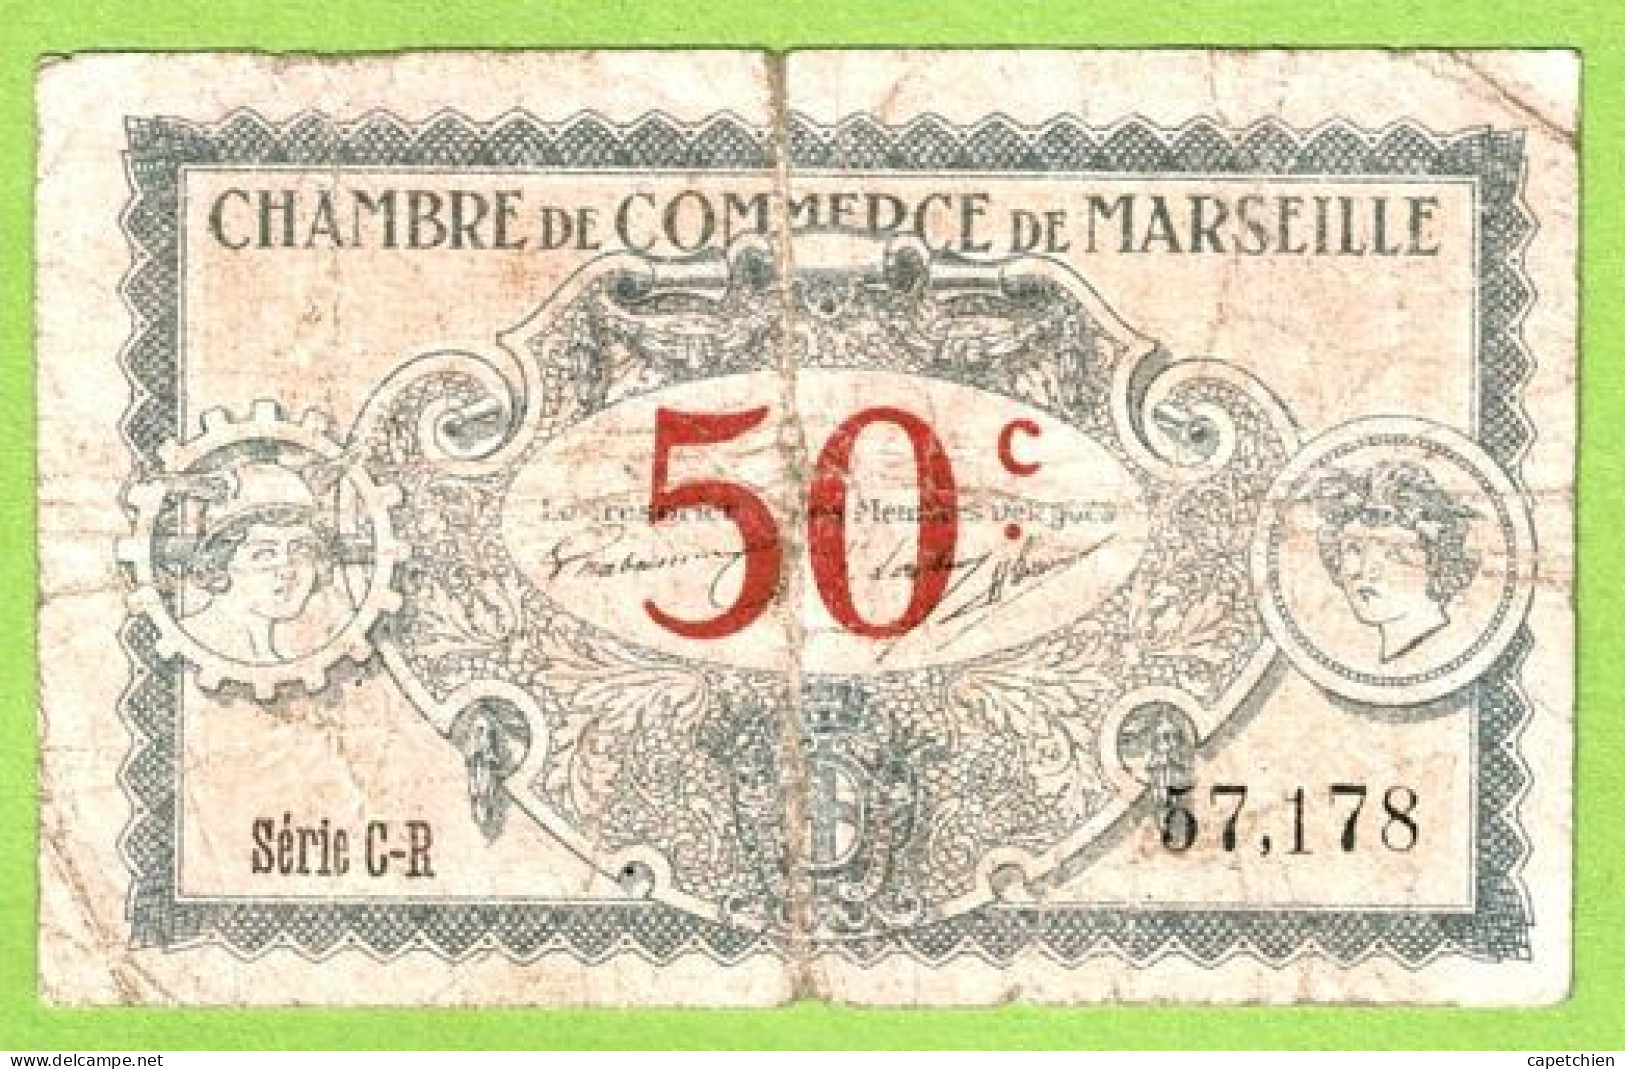 FRANCE / CHAMBRE De COMMERCE / MARSEILLE / 50 CENTIMES / 1917 / N° 57178 / SERIE C - R - Camera Di Commercio